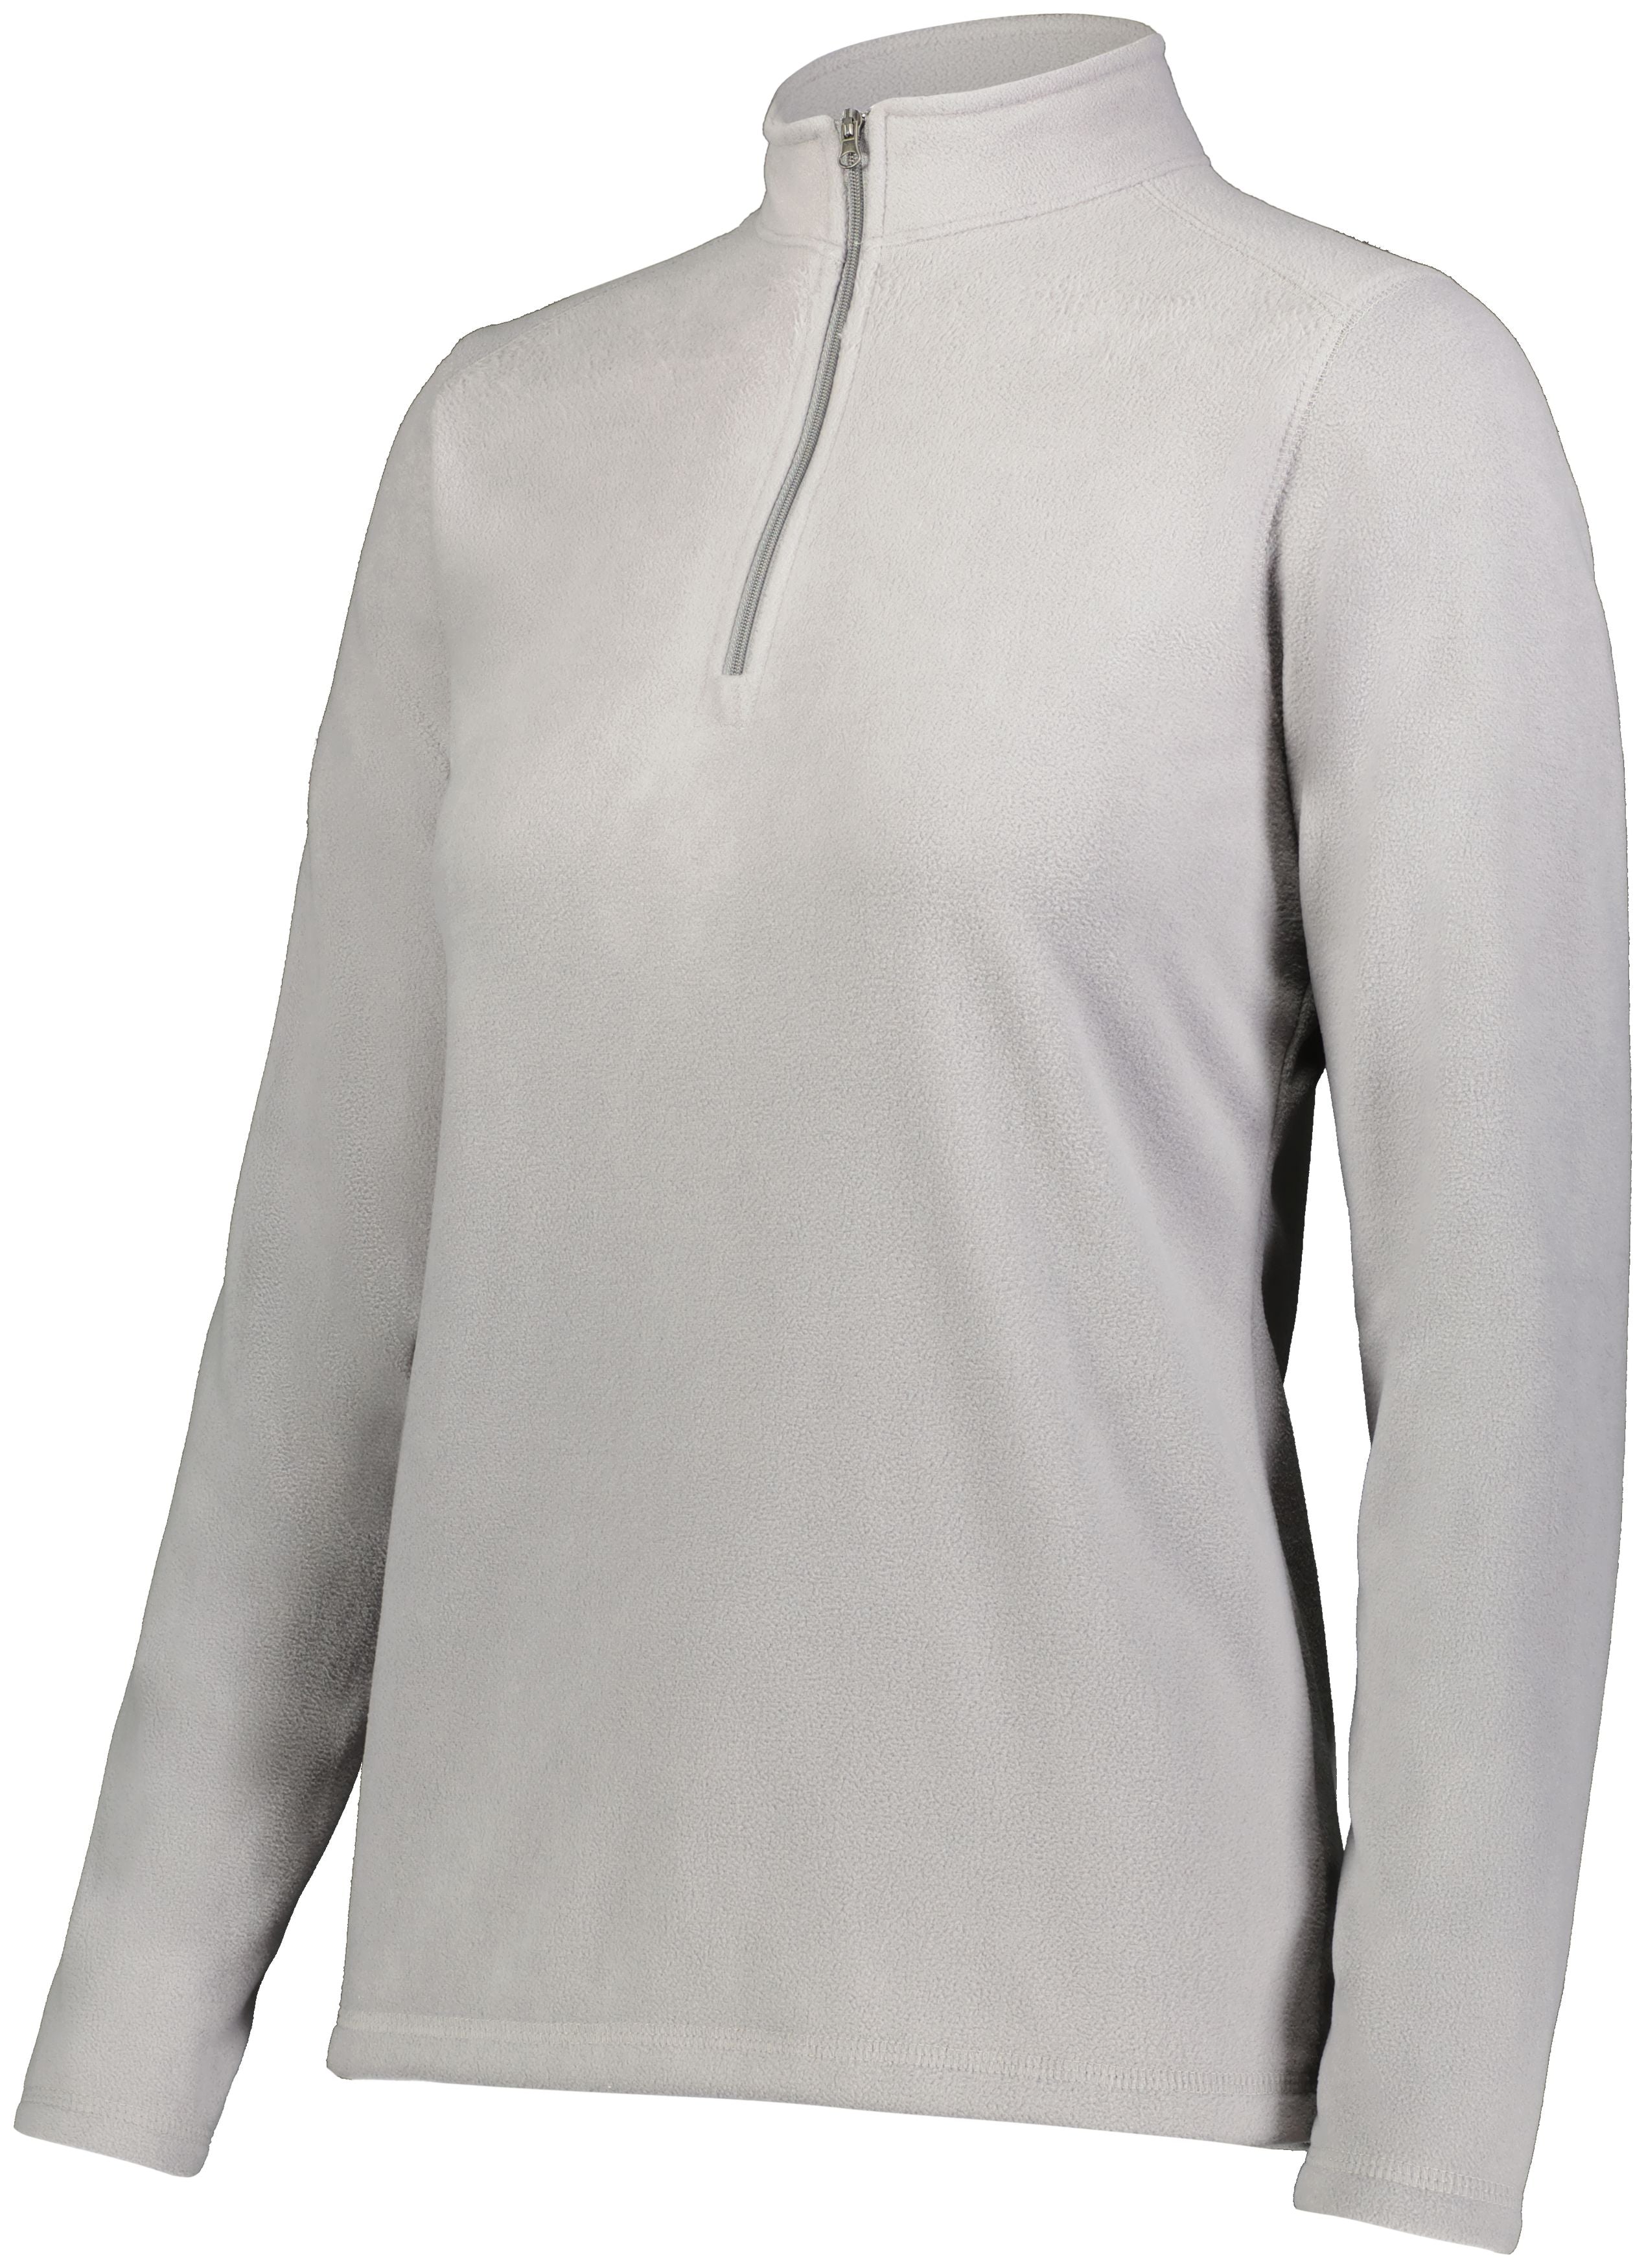 Ladies Micro-Lite Fleece 1/4 Zip Pullover 6864